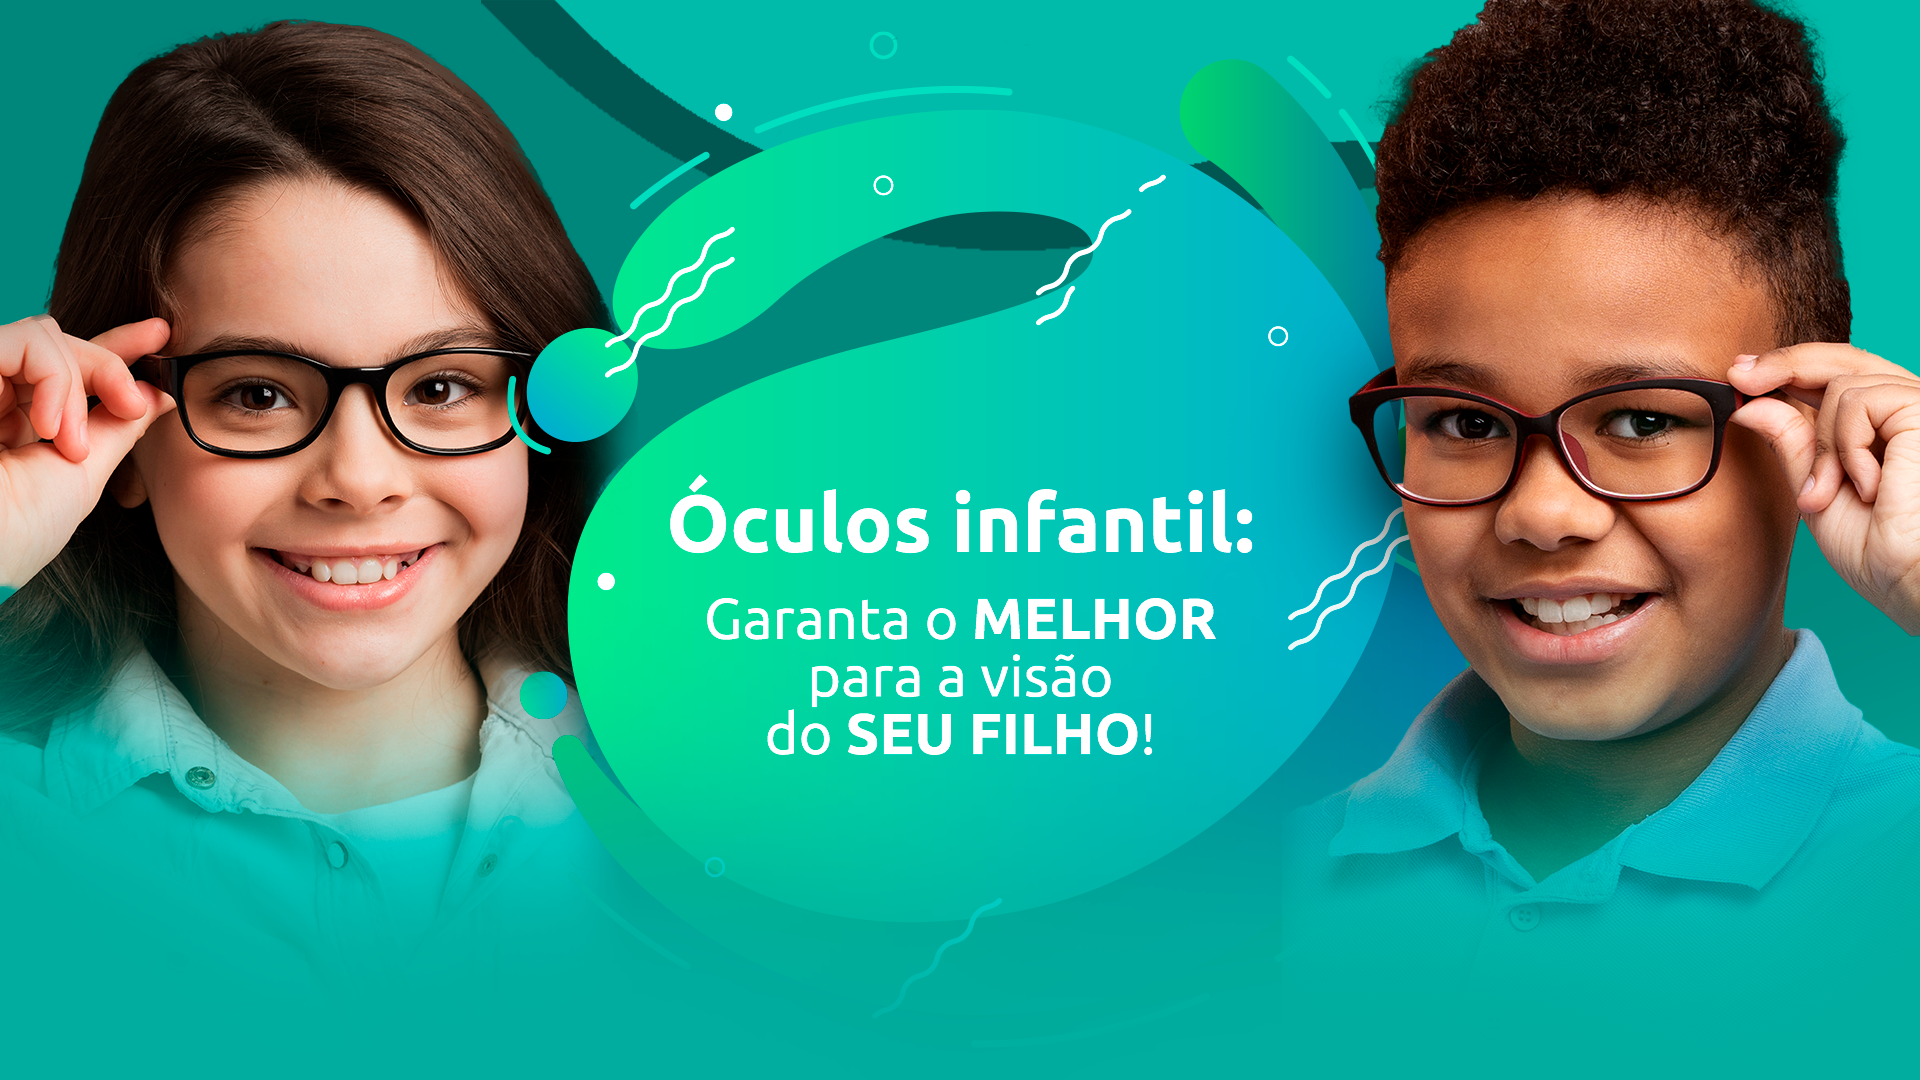 Óculos infantil: Garanta o melhor da visão para seu filho!